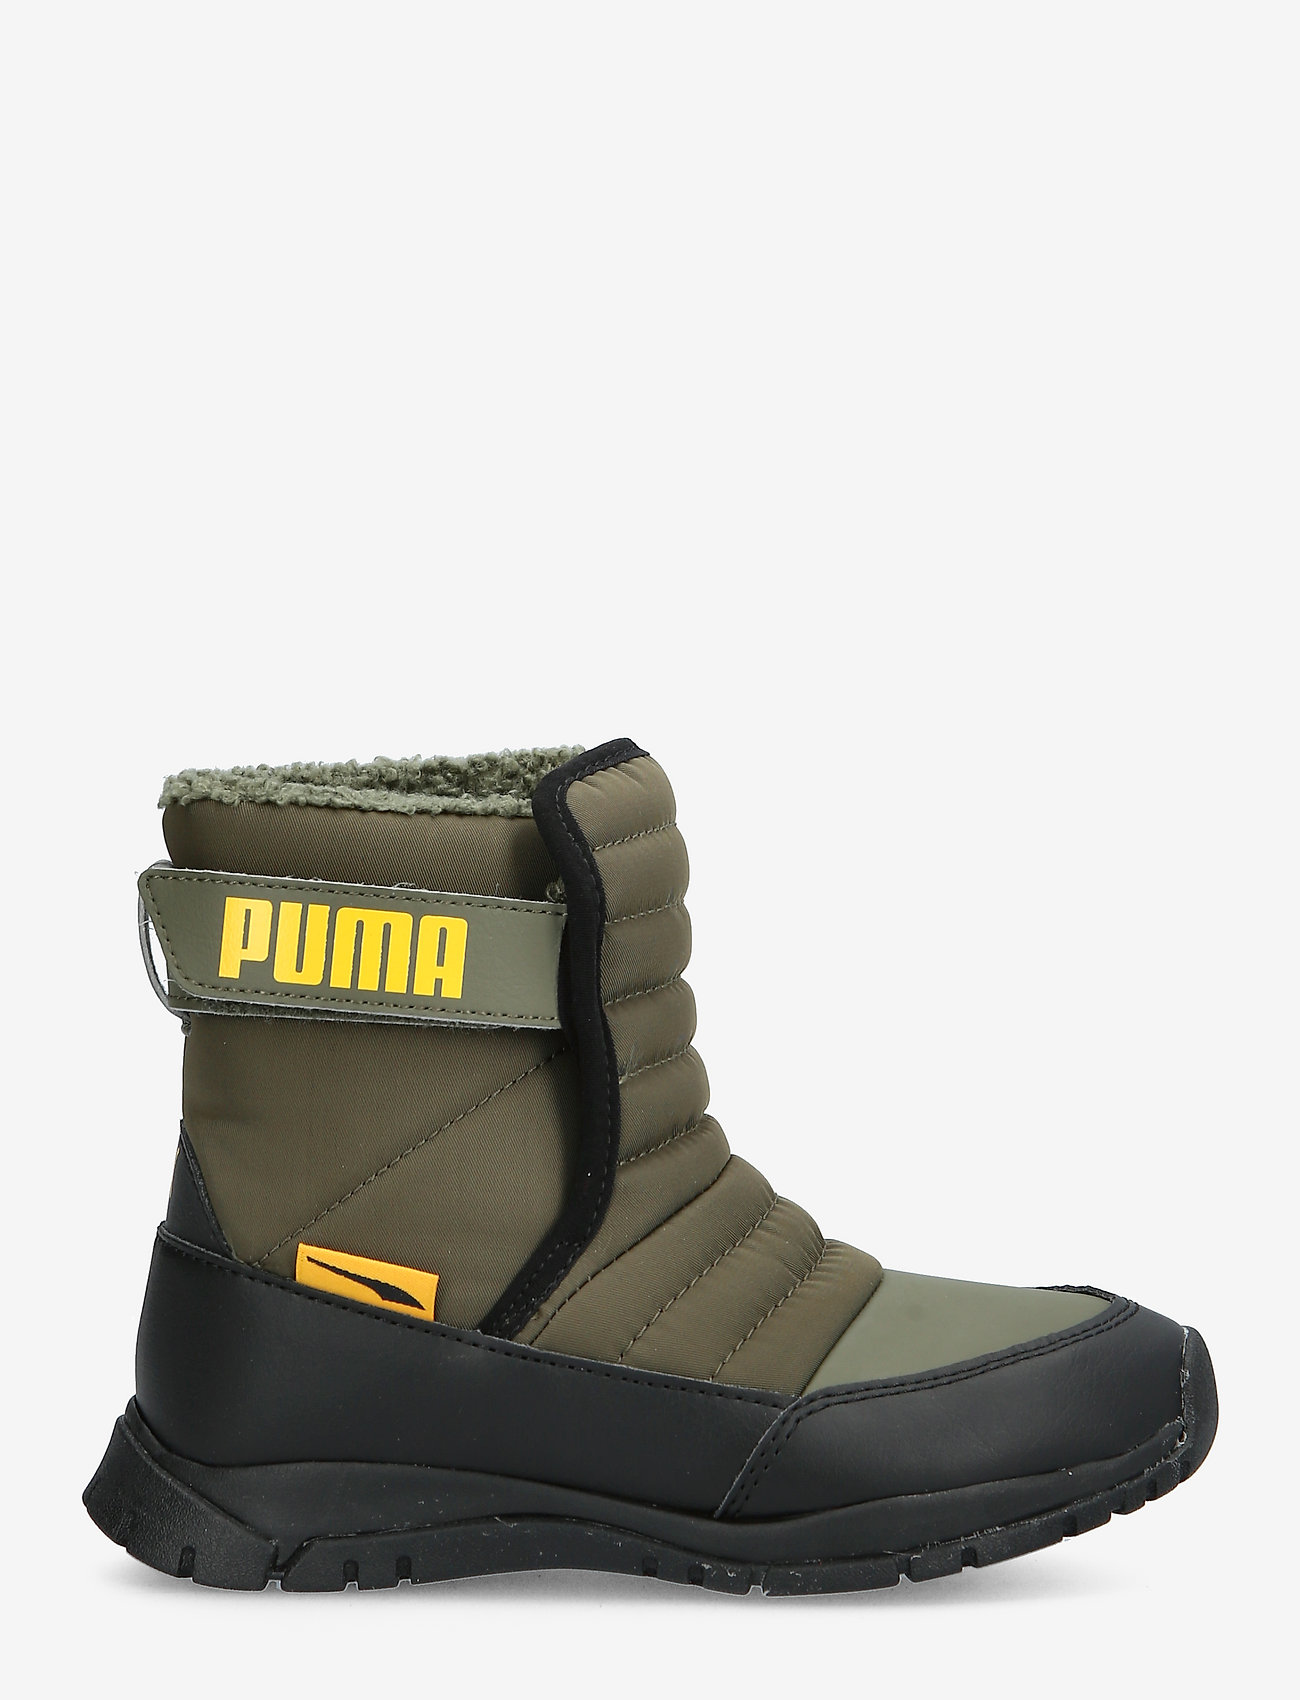 puma men's winter boots